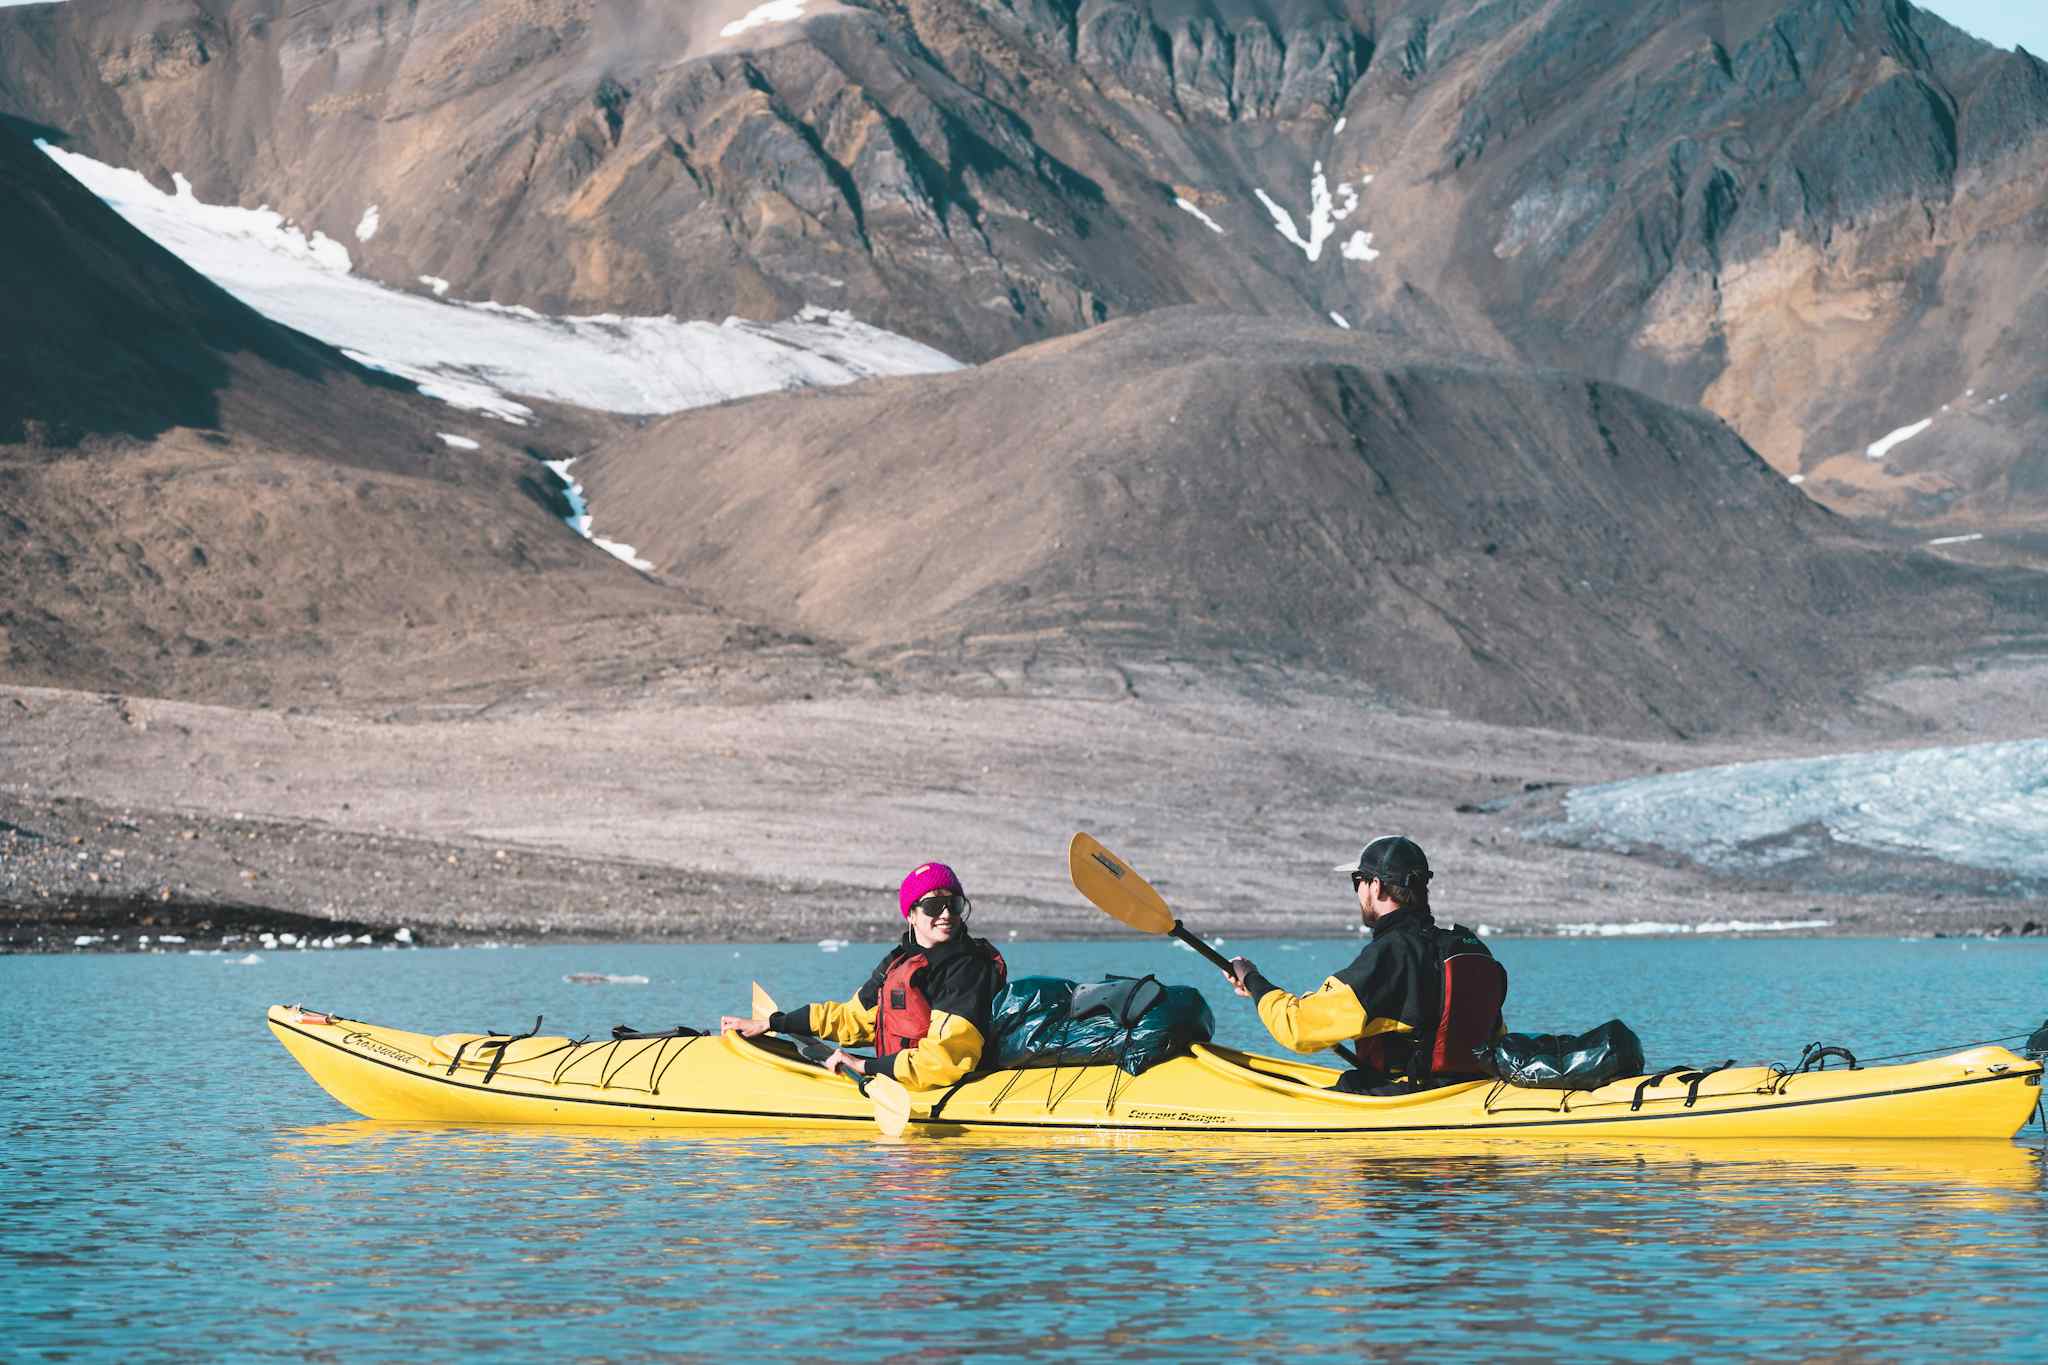 Kayaking in Svalbard. Photo: Host/Christopher O'Neil